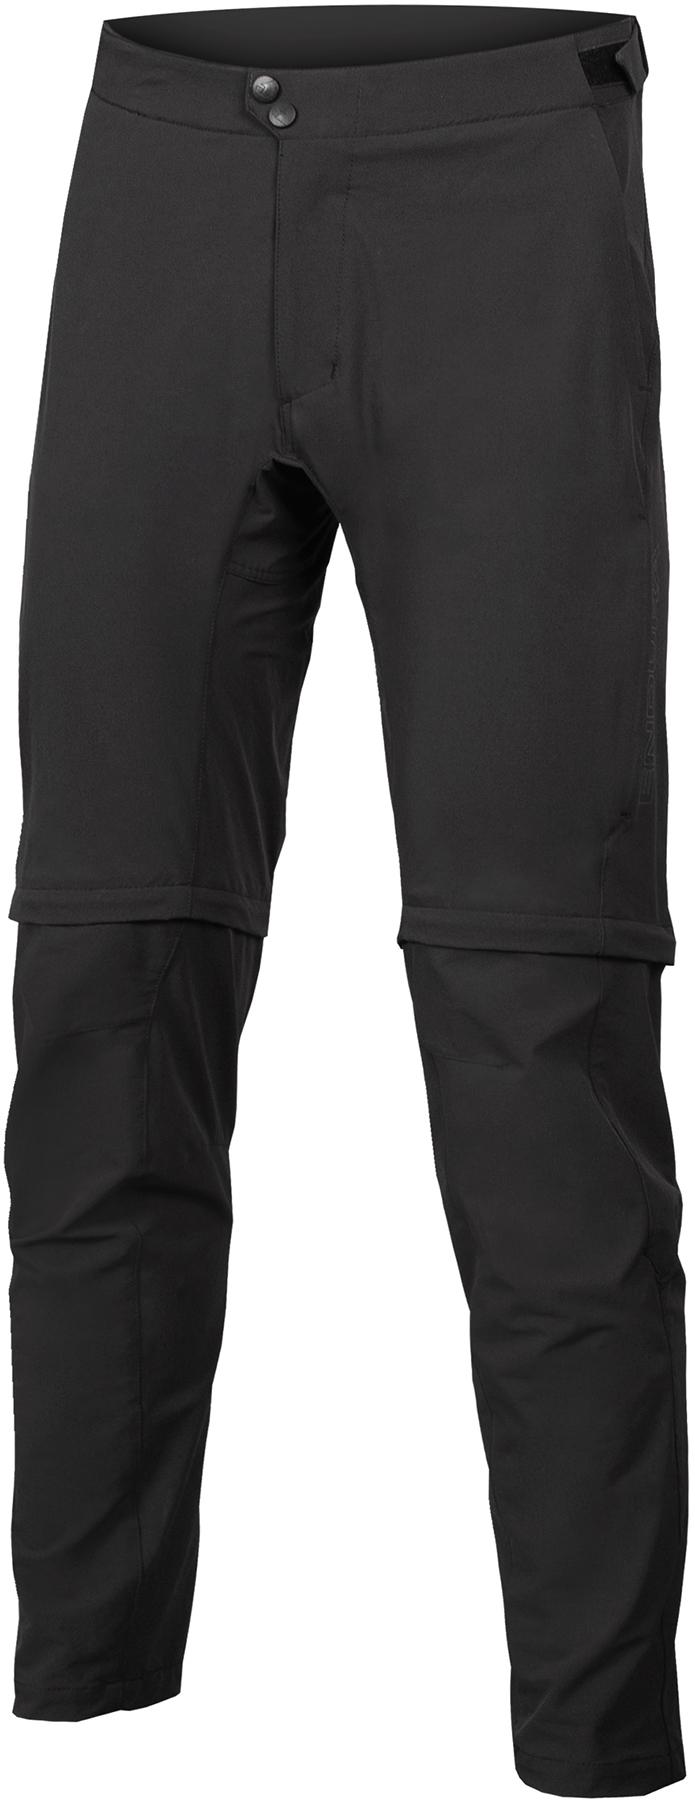 Endura Gv500 Zip-off Trouser - Black